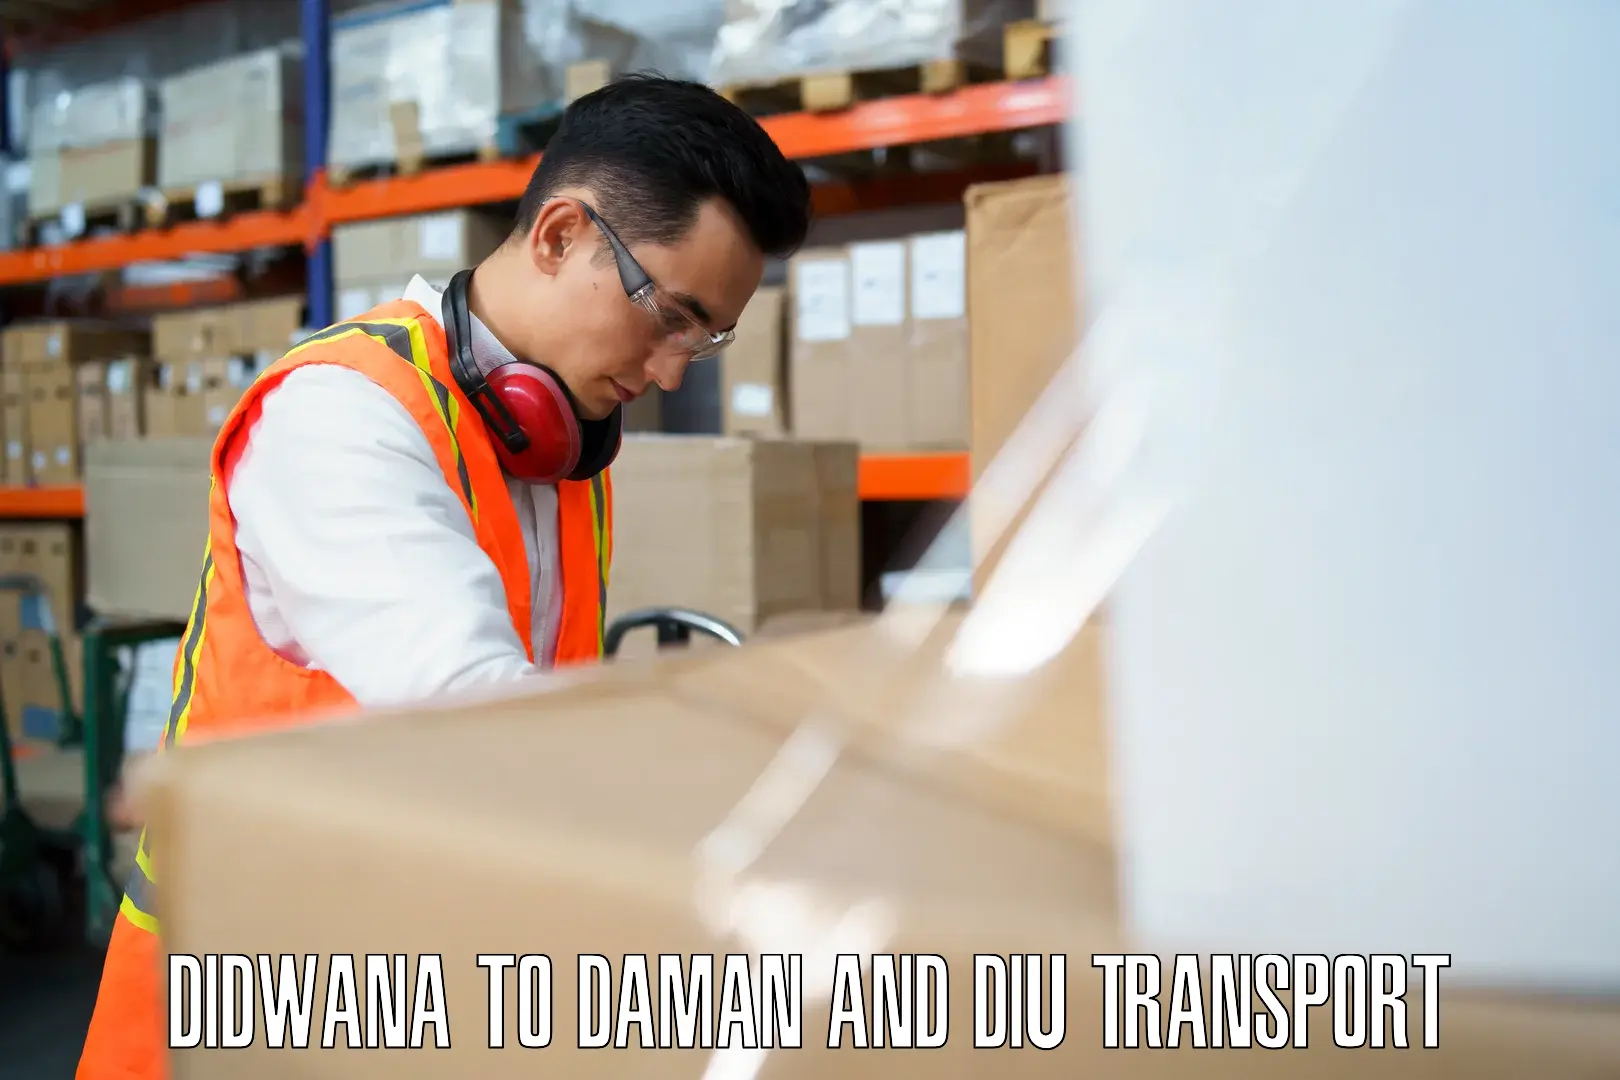 Air cargo transport services Didwana to Daman and Diu